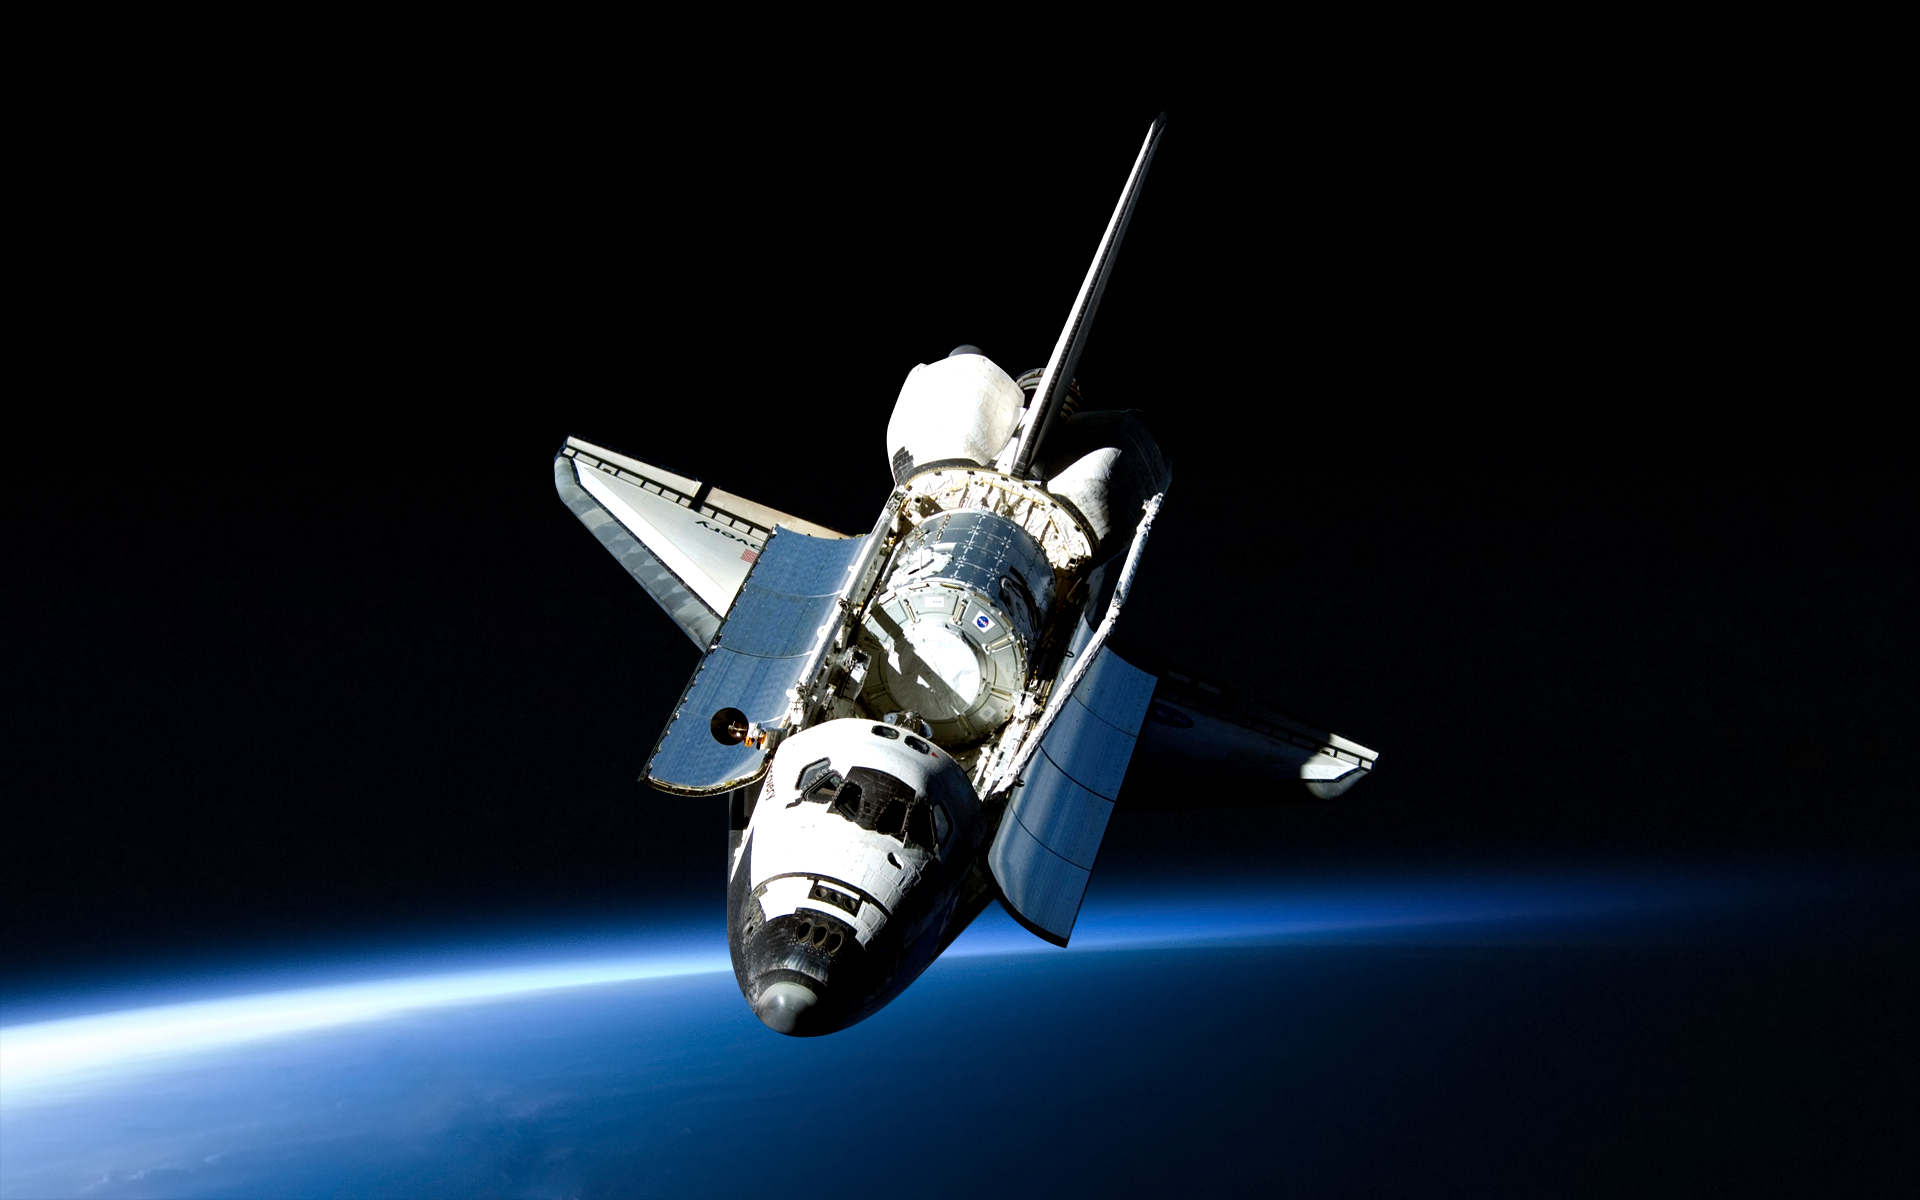 carta da parati scoperta,space shuttle,navicella spaziale,spazio,veicolo,satellitare